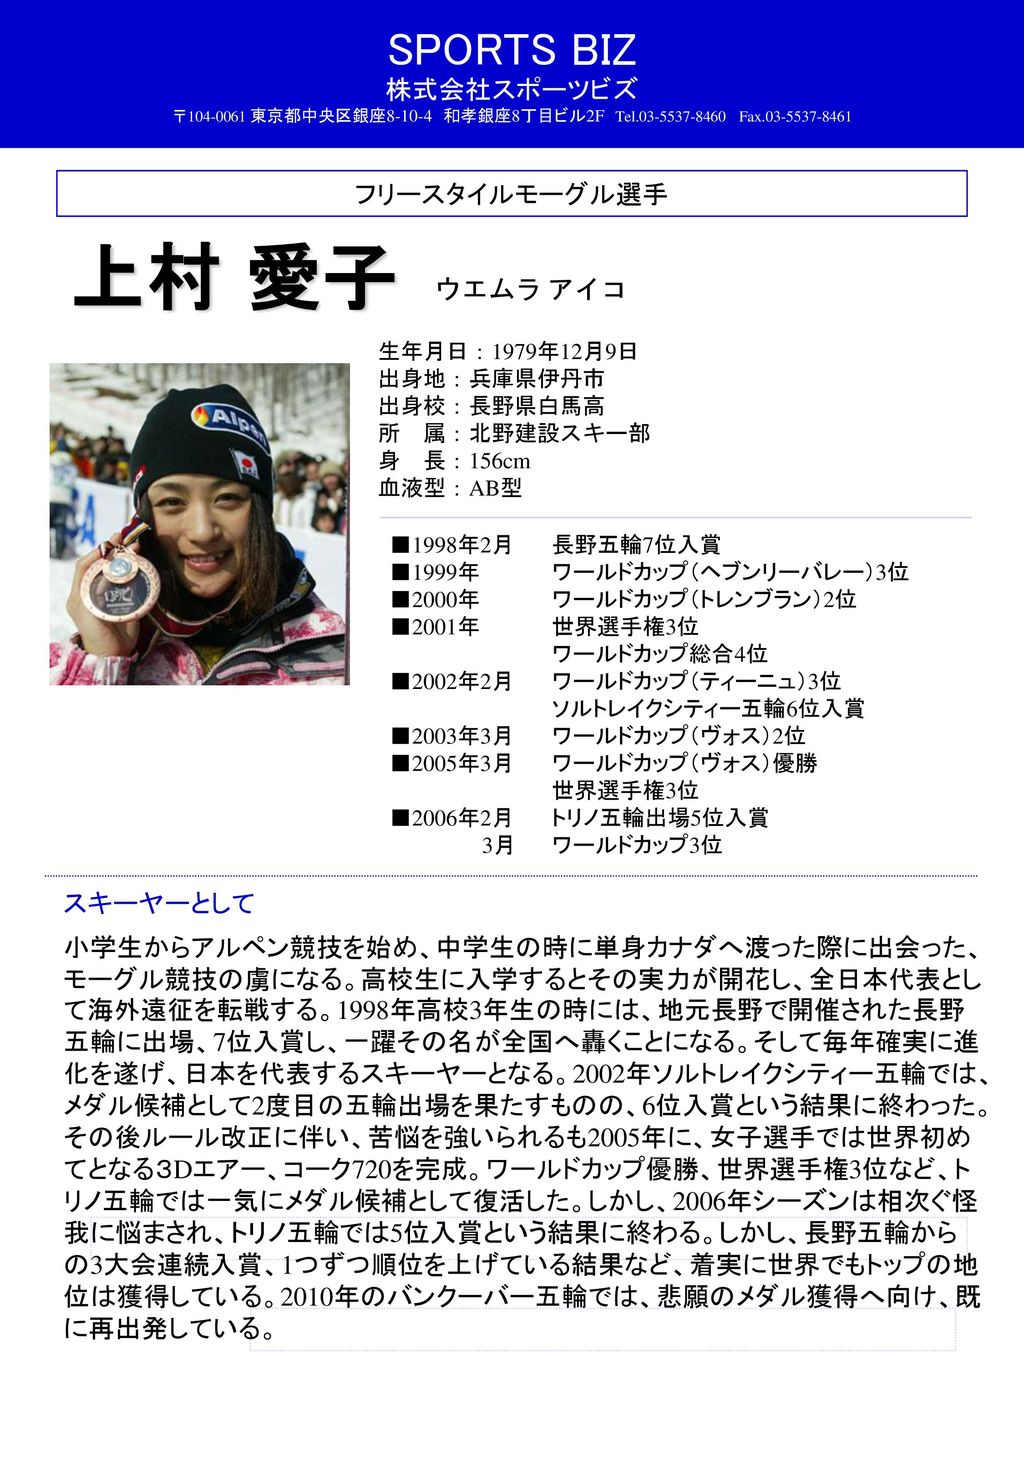 上村 愛子 フリースタイルモーグル選手 ウエムラ アイコ スキーヤーとして Ppt Download